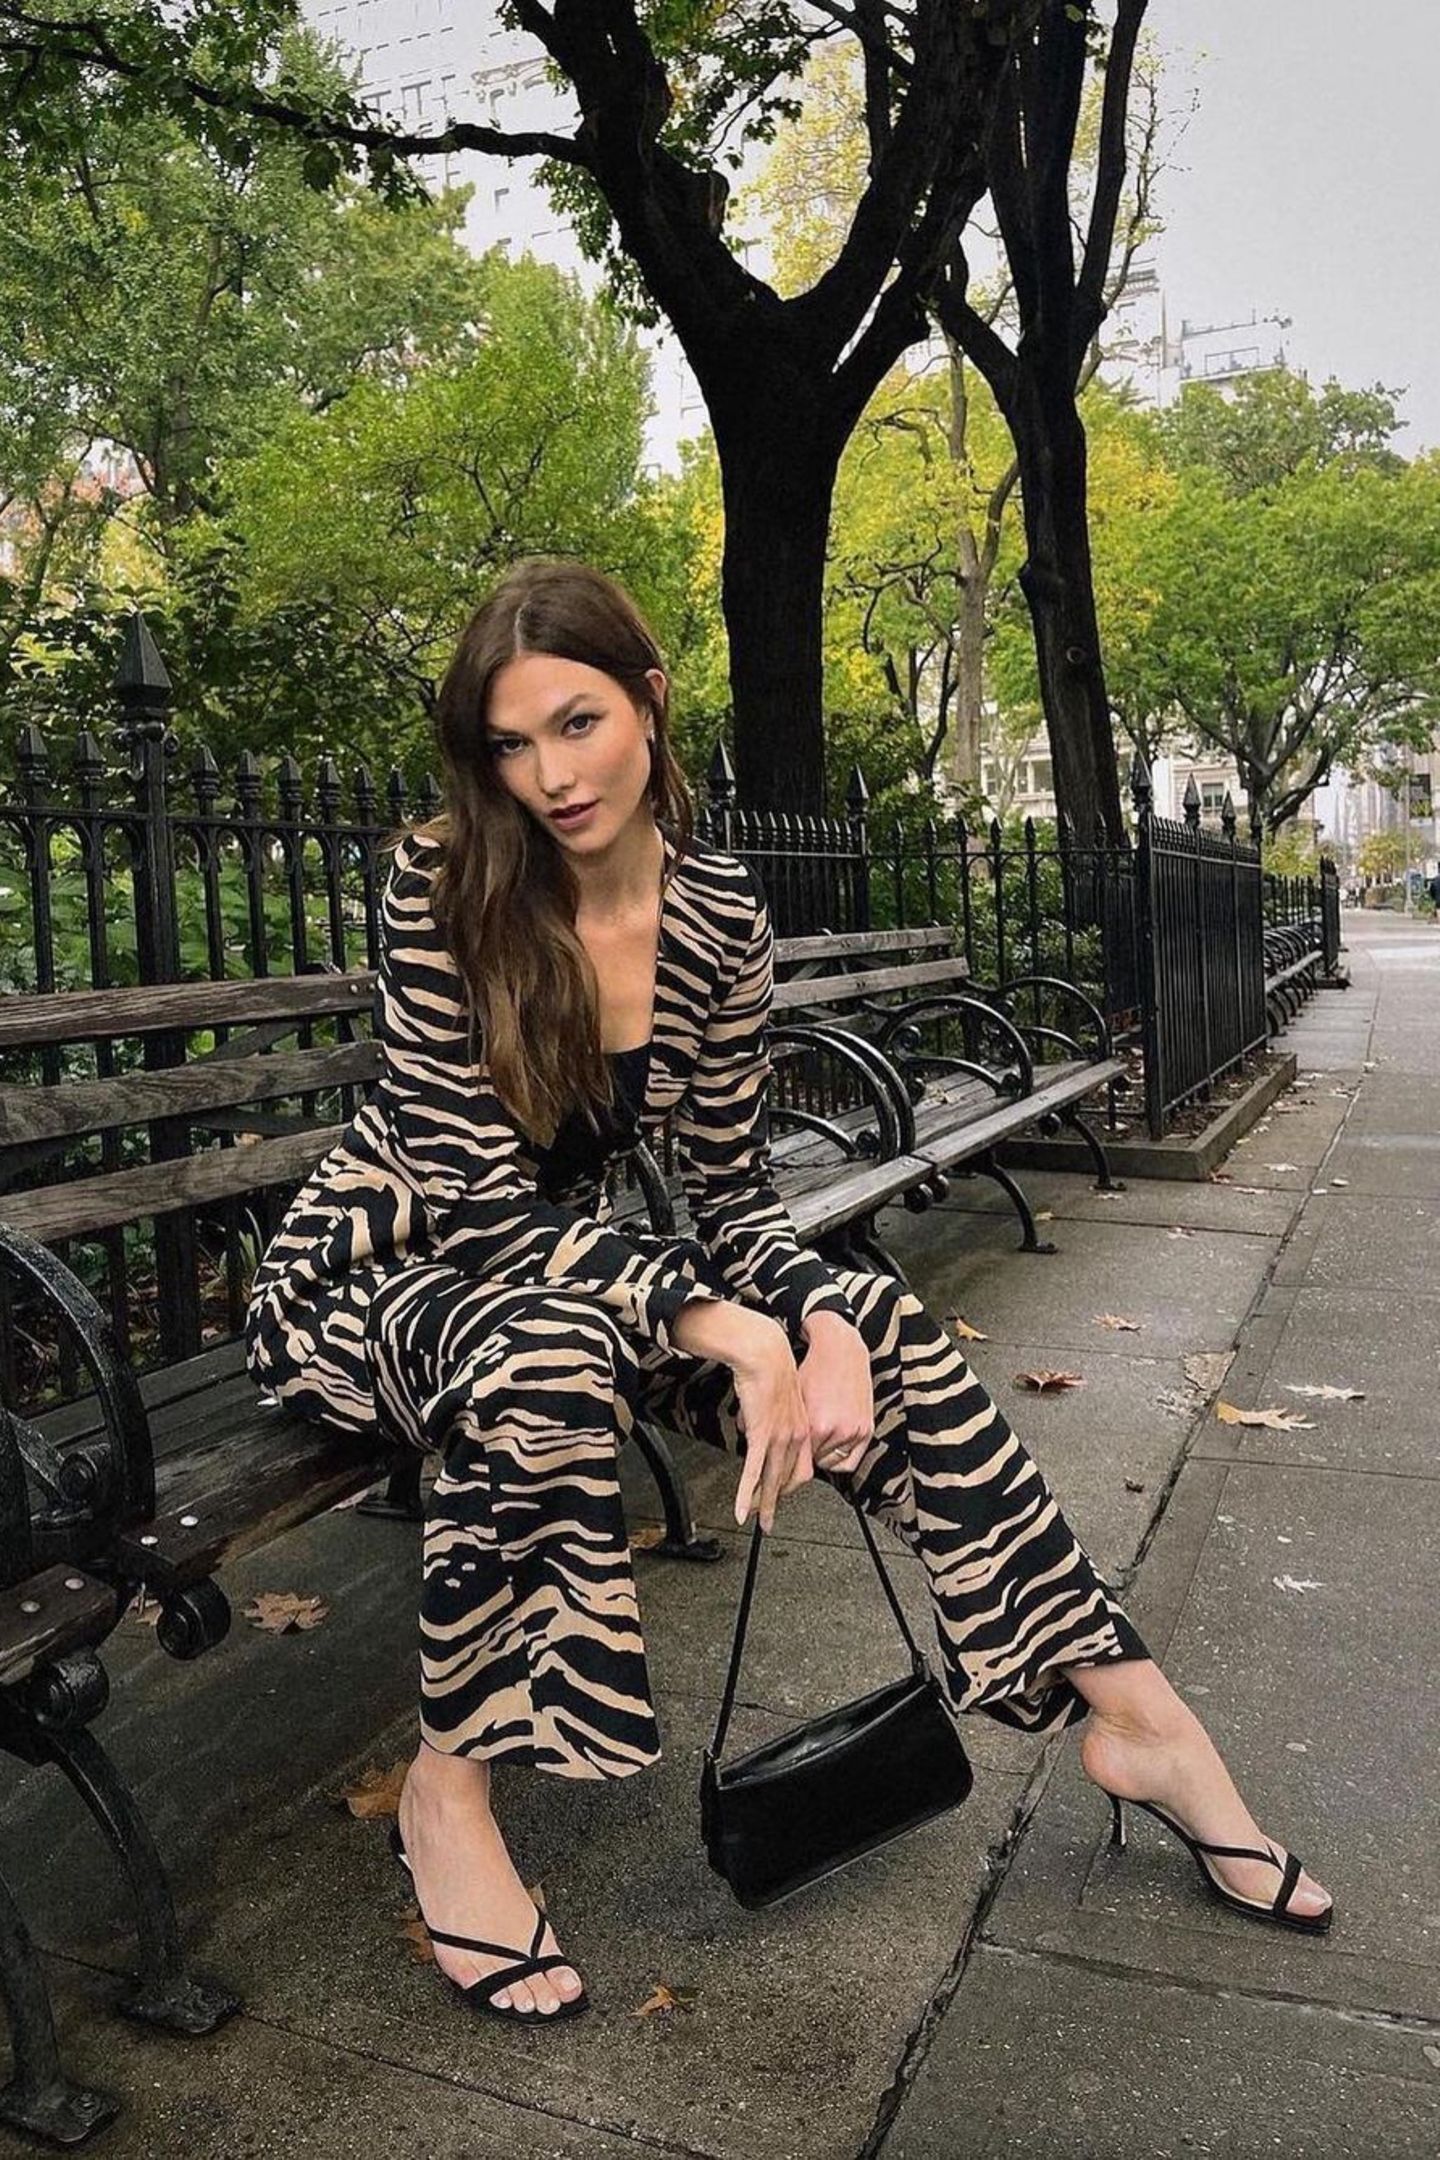 Auf Safari im Central Park! Karlie Kloss posiert auf einer Bank in einem sexy Anzug mit Zebra-Print in Braun-Schwarz. Ihre Accessoires hält sie dezent und kombiniert dazu zarte Sandaletten von Jimmy Choo und eine Baguette-Tasche, ebenfalls in Schwarz. Die Haare des Models fallen in natürlichen Wellen über die Schulter. 